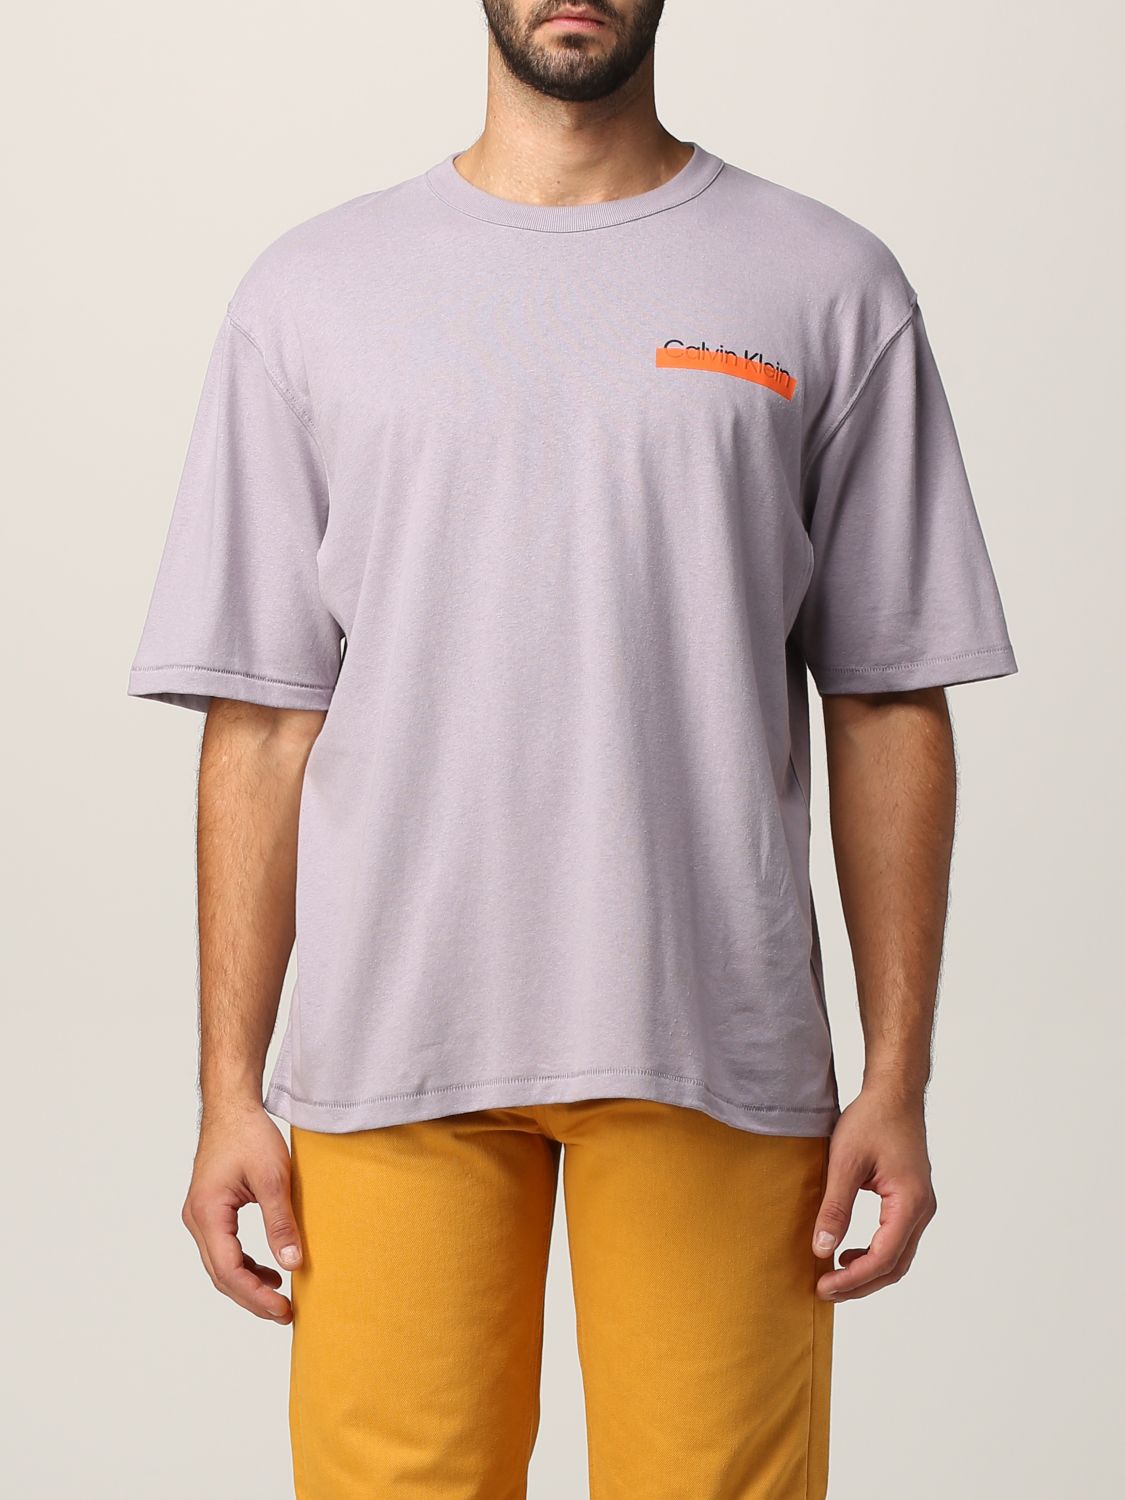 HERON PRESTON FOR CALVIN KLEIN: Orange  Heron Preston x Calvin Klein T- Shirt - Grey | Heron Preston For Calvin Klein t-shirt K10K109204PDD online  on 